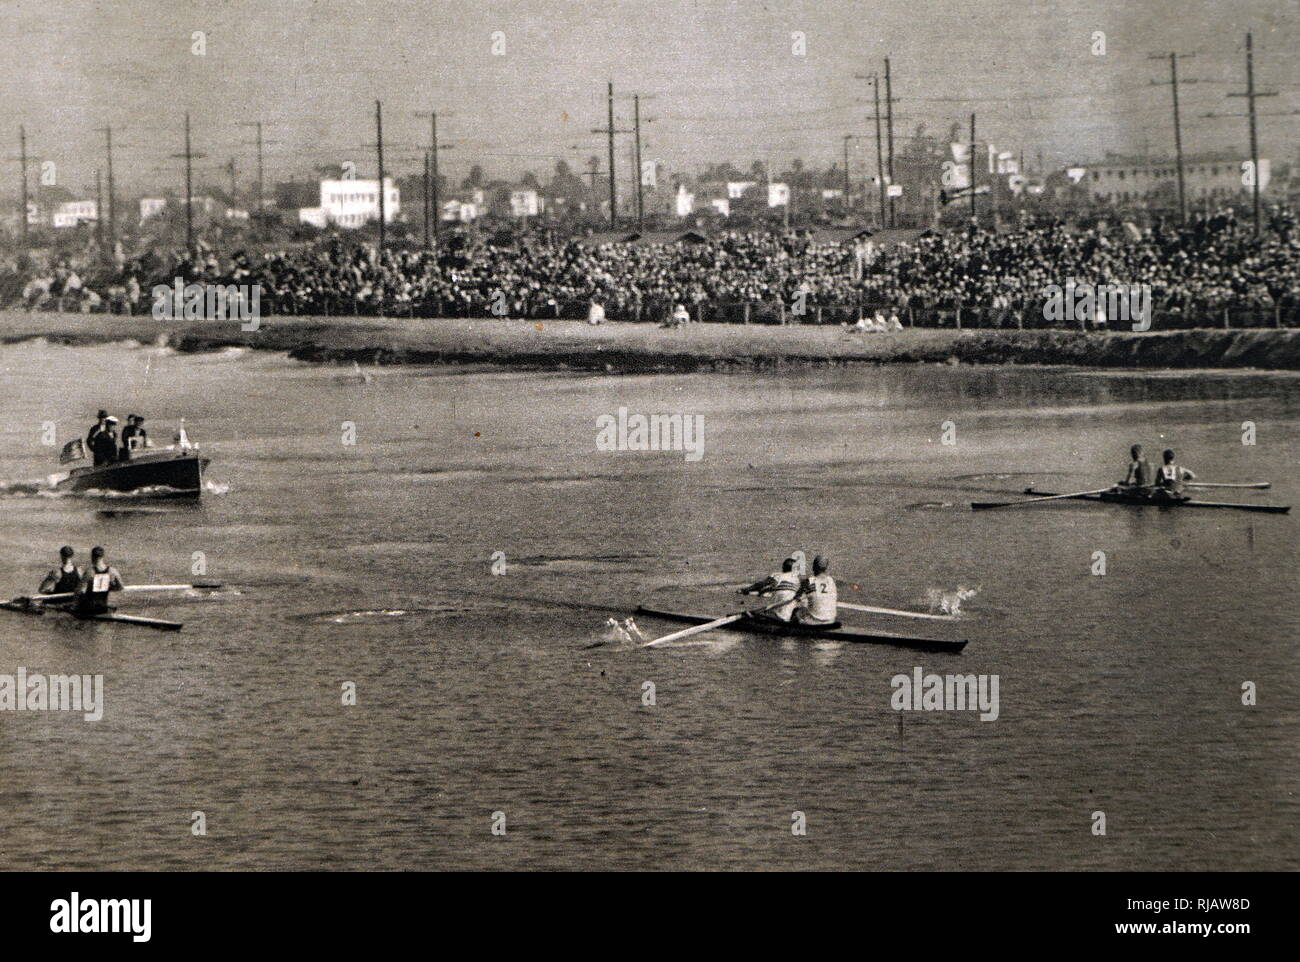 Fotografia del Coxless coppie gara a remi durante il 1932 giochi olimpici. Mostra in Inghilterra, Australia e Olanda. Foto Stock